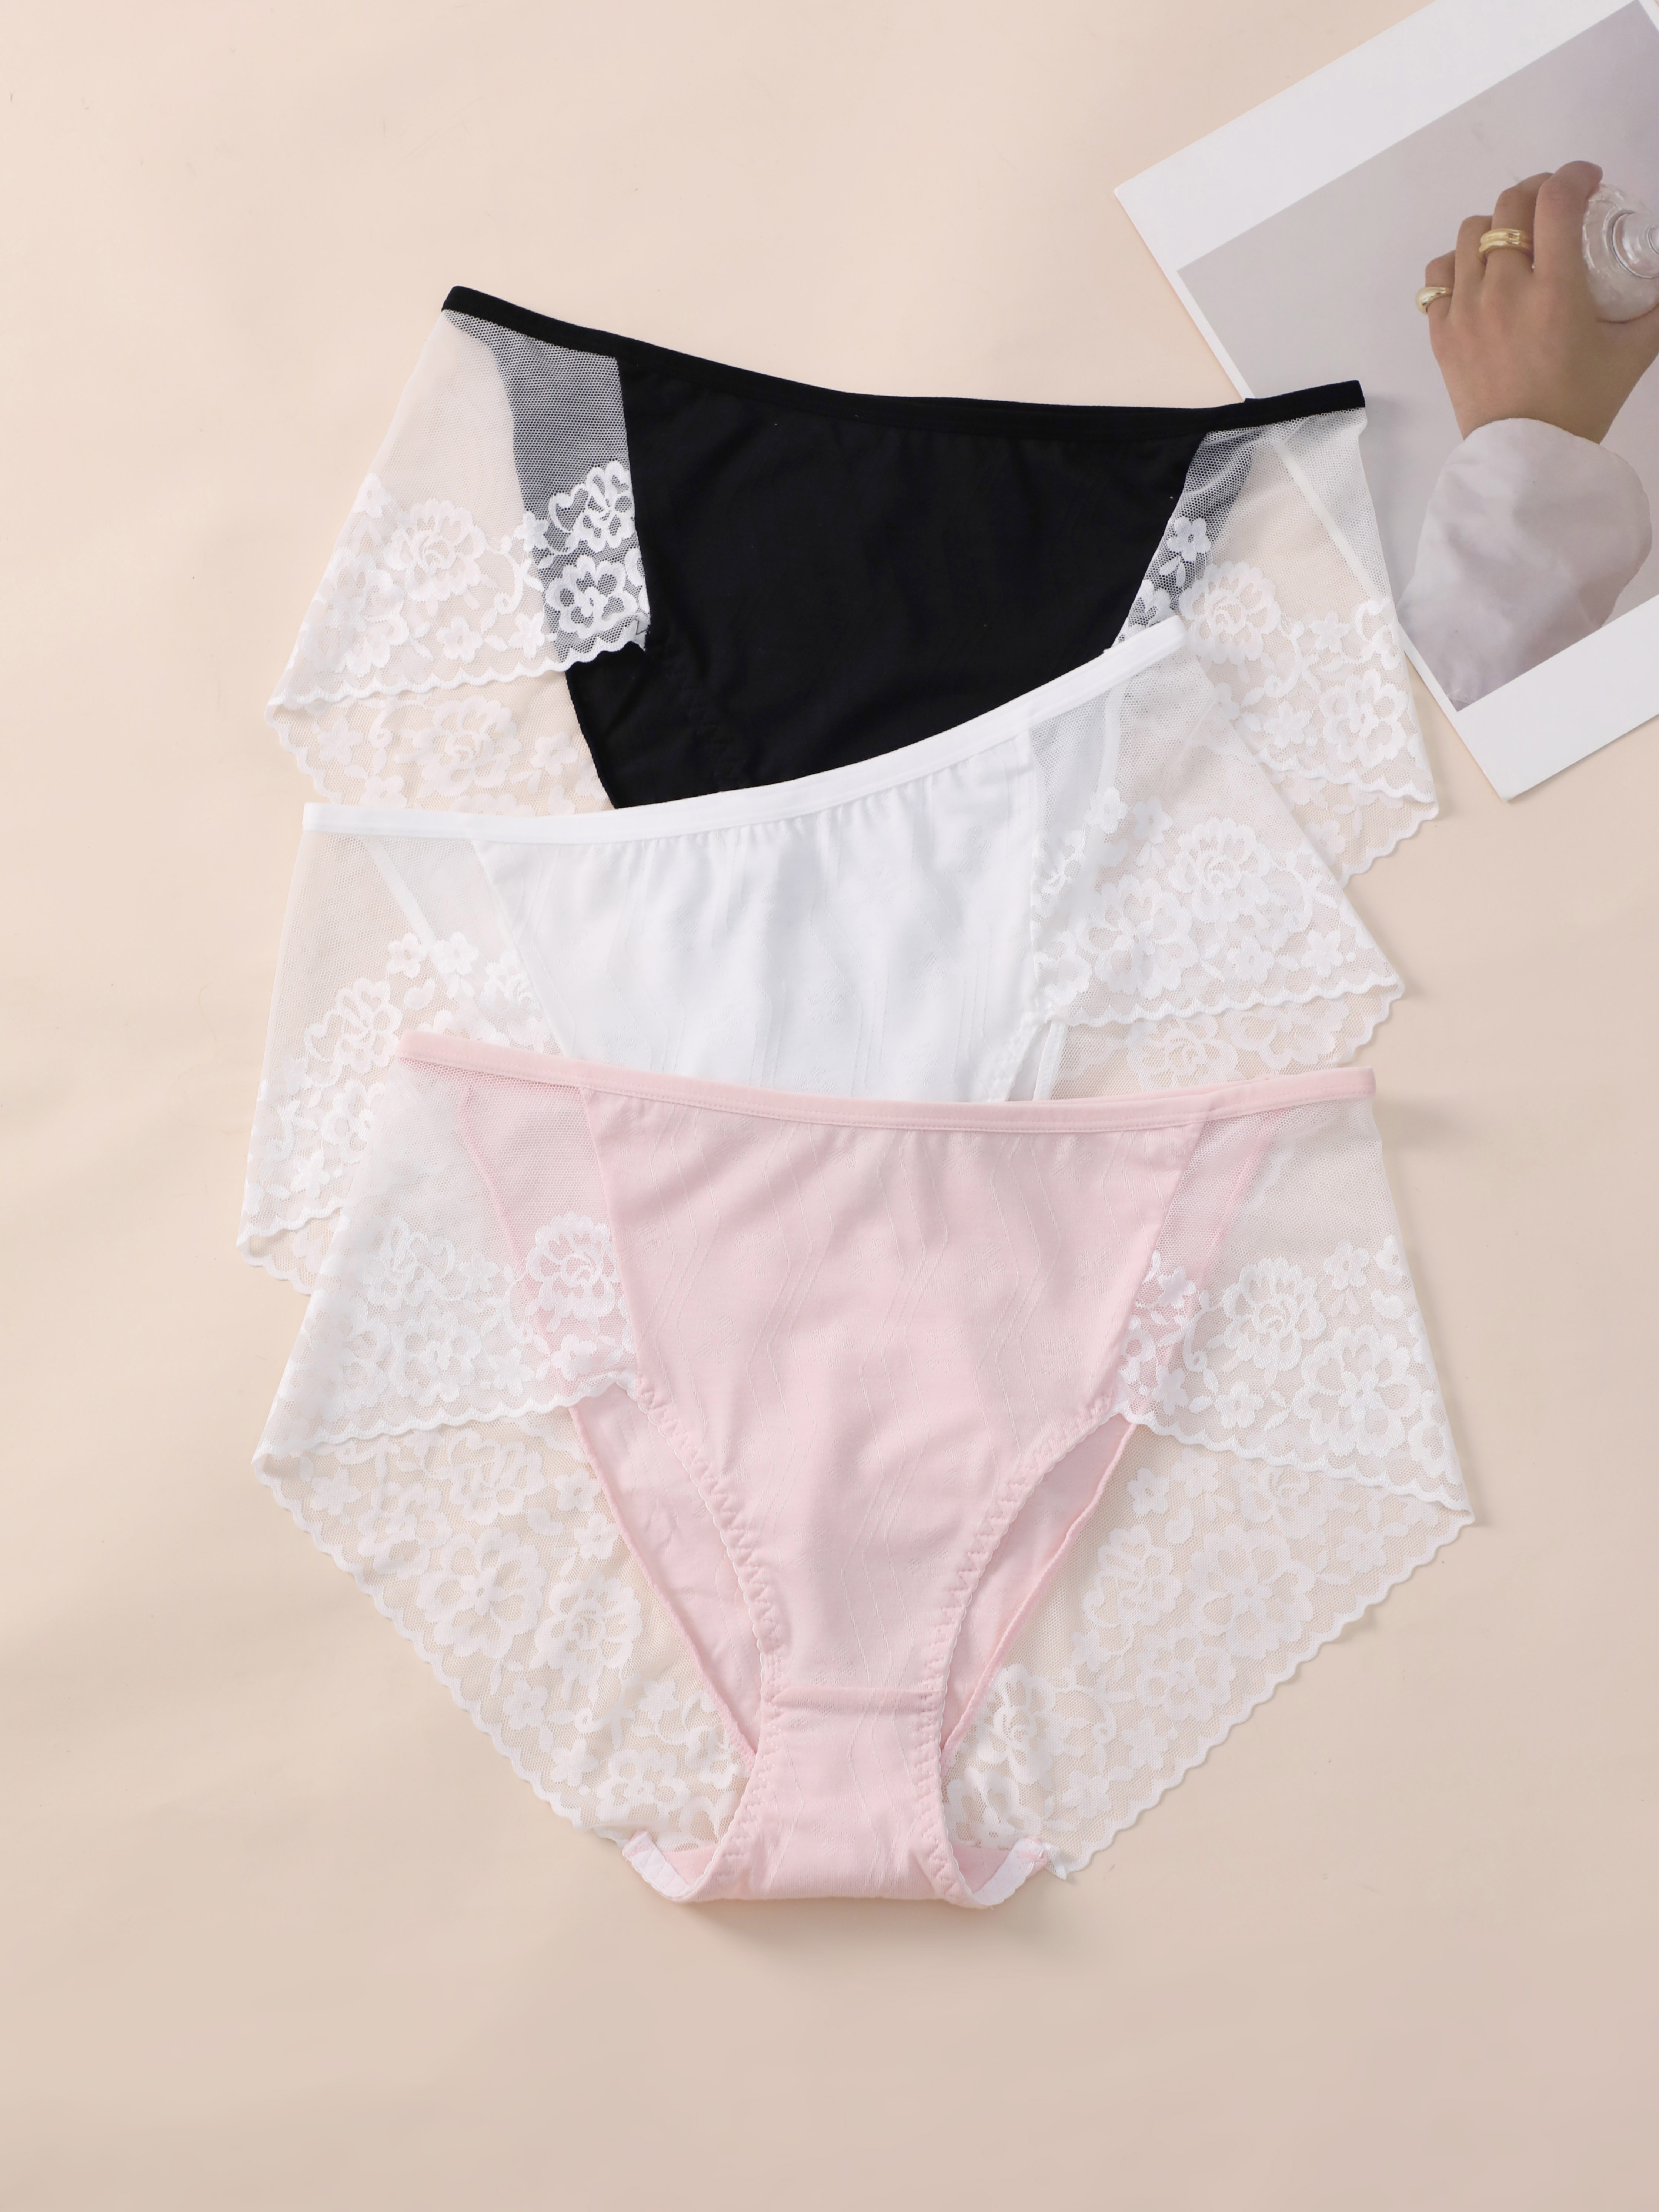 Underwear Women Panties Set Cotton Soft Stretch Lingerie